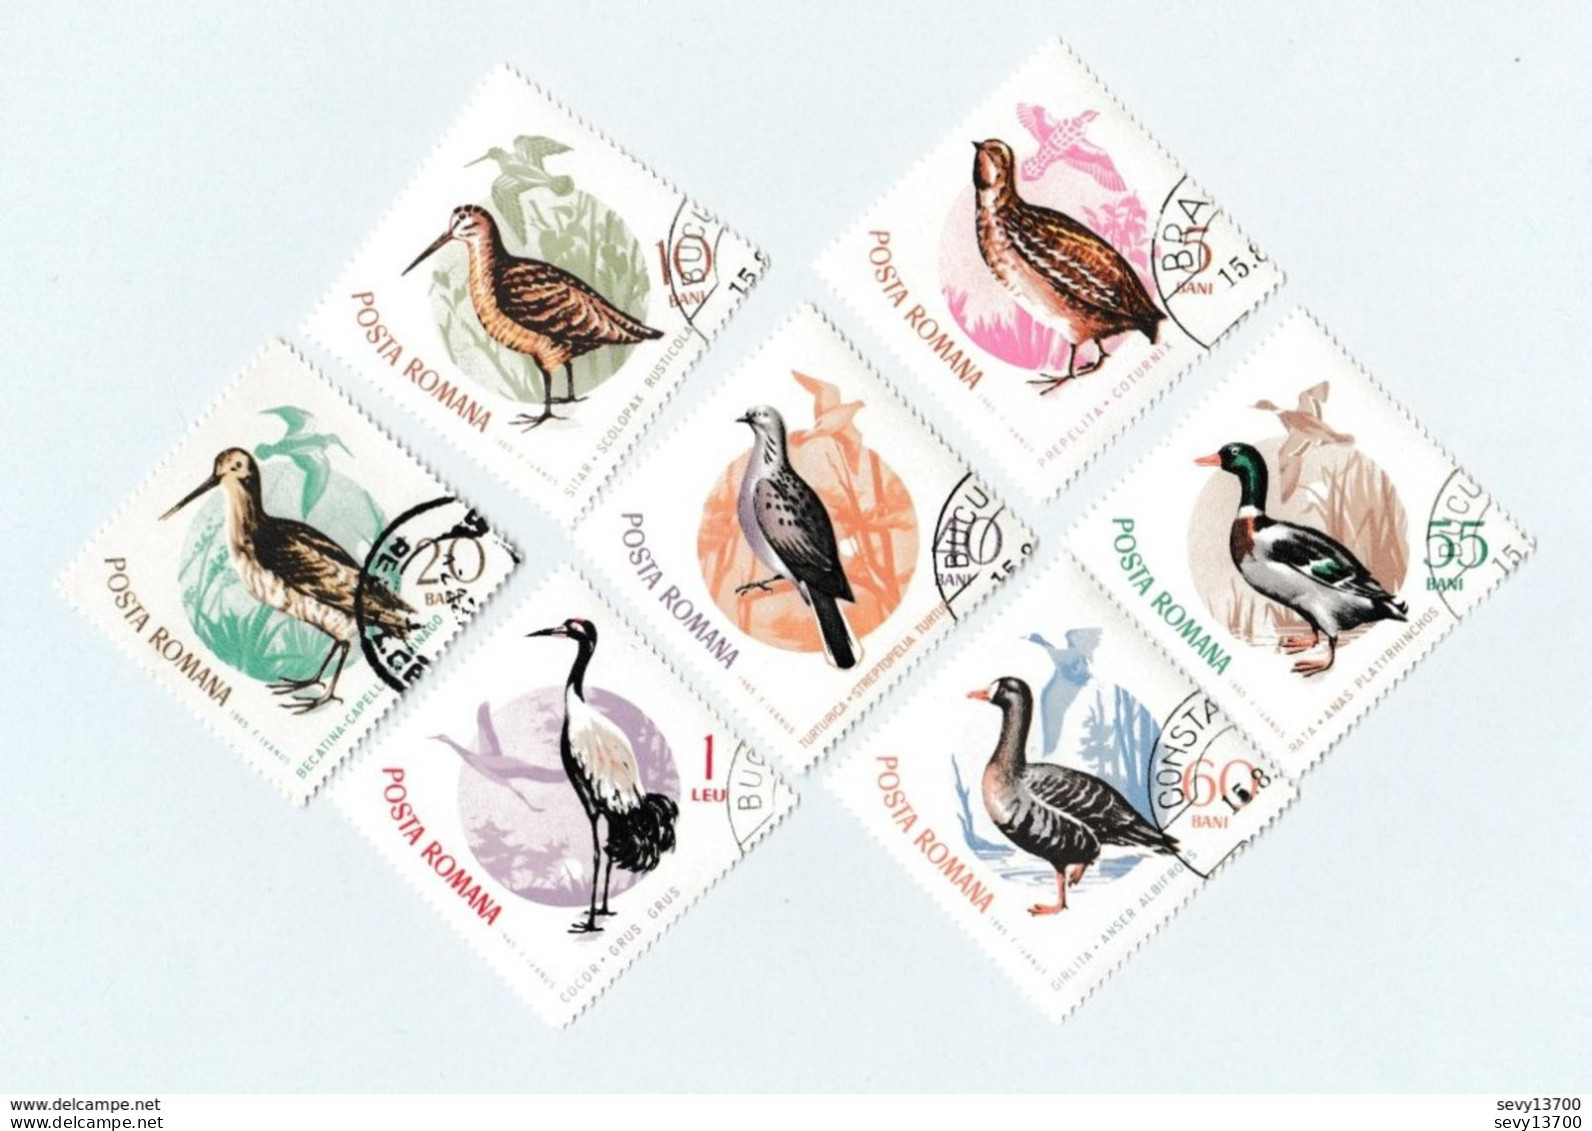 Roumanie lot de 40 timbres les animaux - marcassin, faon, les poissons, oiseaux, lézard, serpents, salamandre